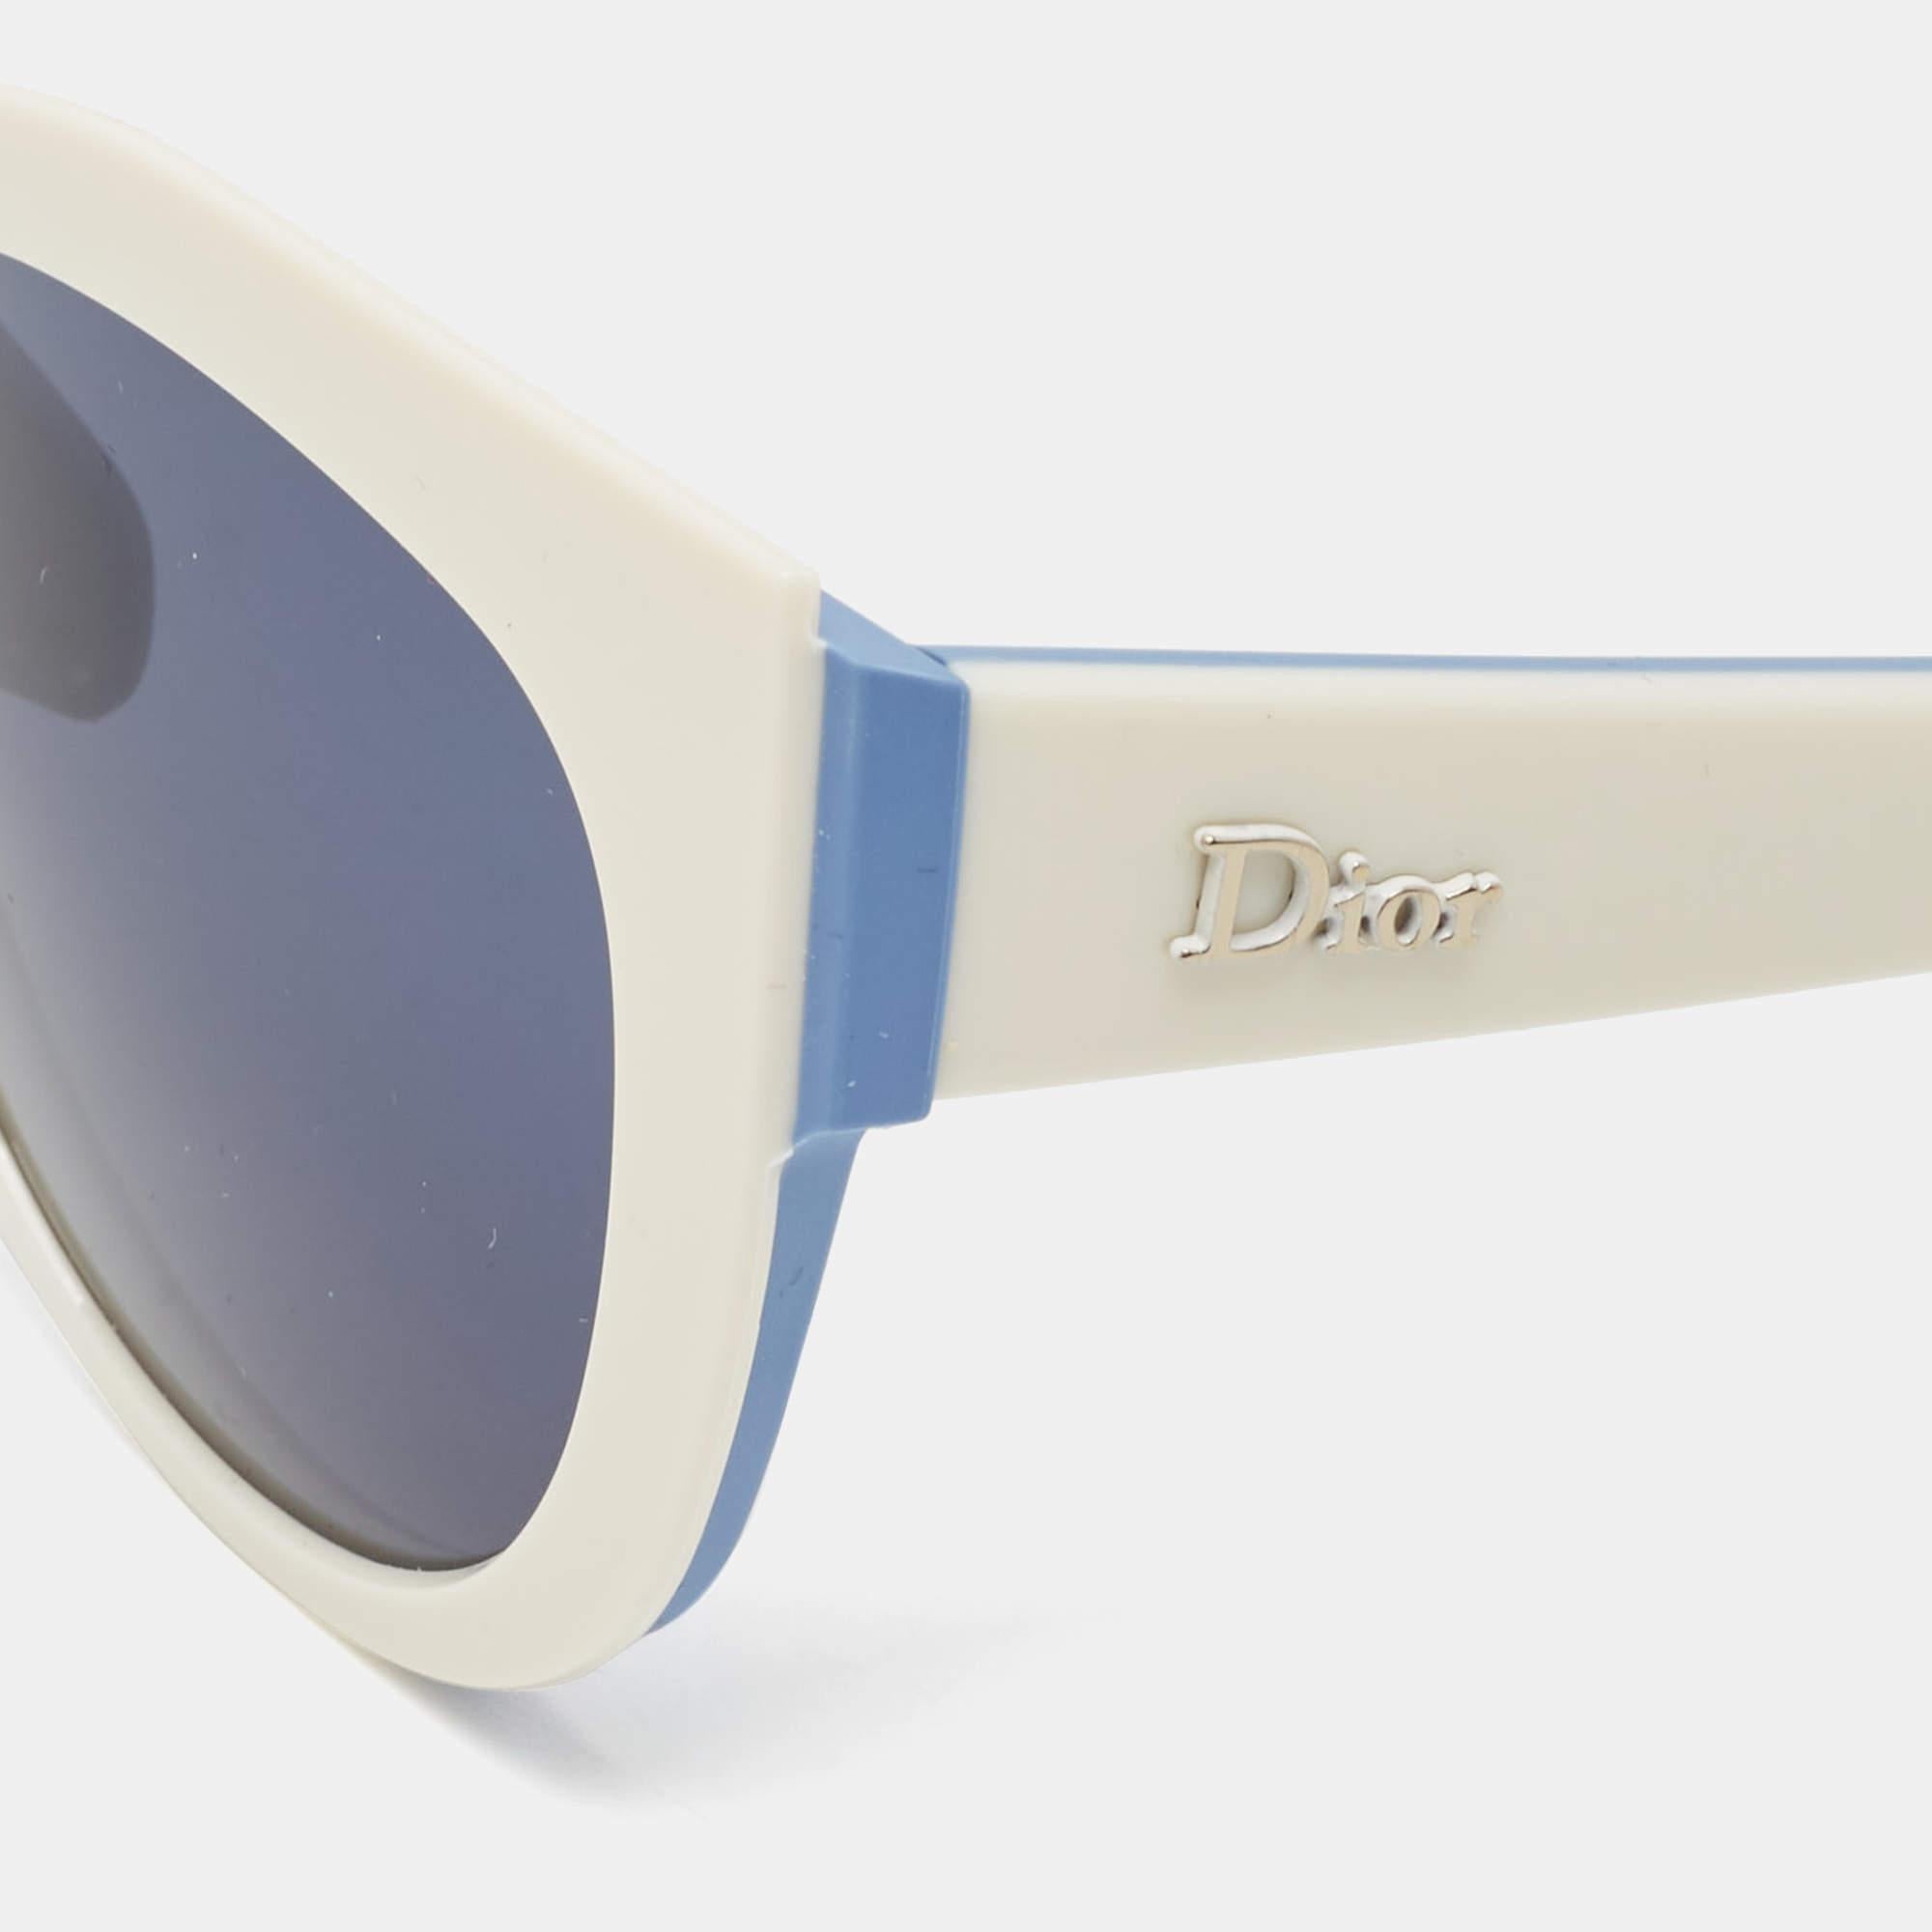 Mit dieser Sonnenbrille von Dior können Sie sonnige Tage mit Stil genießen. Die luxuriöse Sonnenbrille wurde mit viel Know-how entwickelt und verfügt über einen gut gestalteten Rahmen und hochwertige Gläser, die Ihre Augen